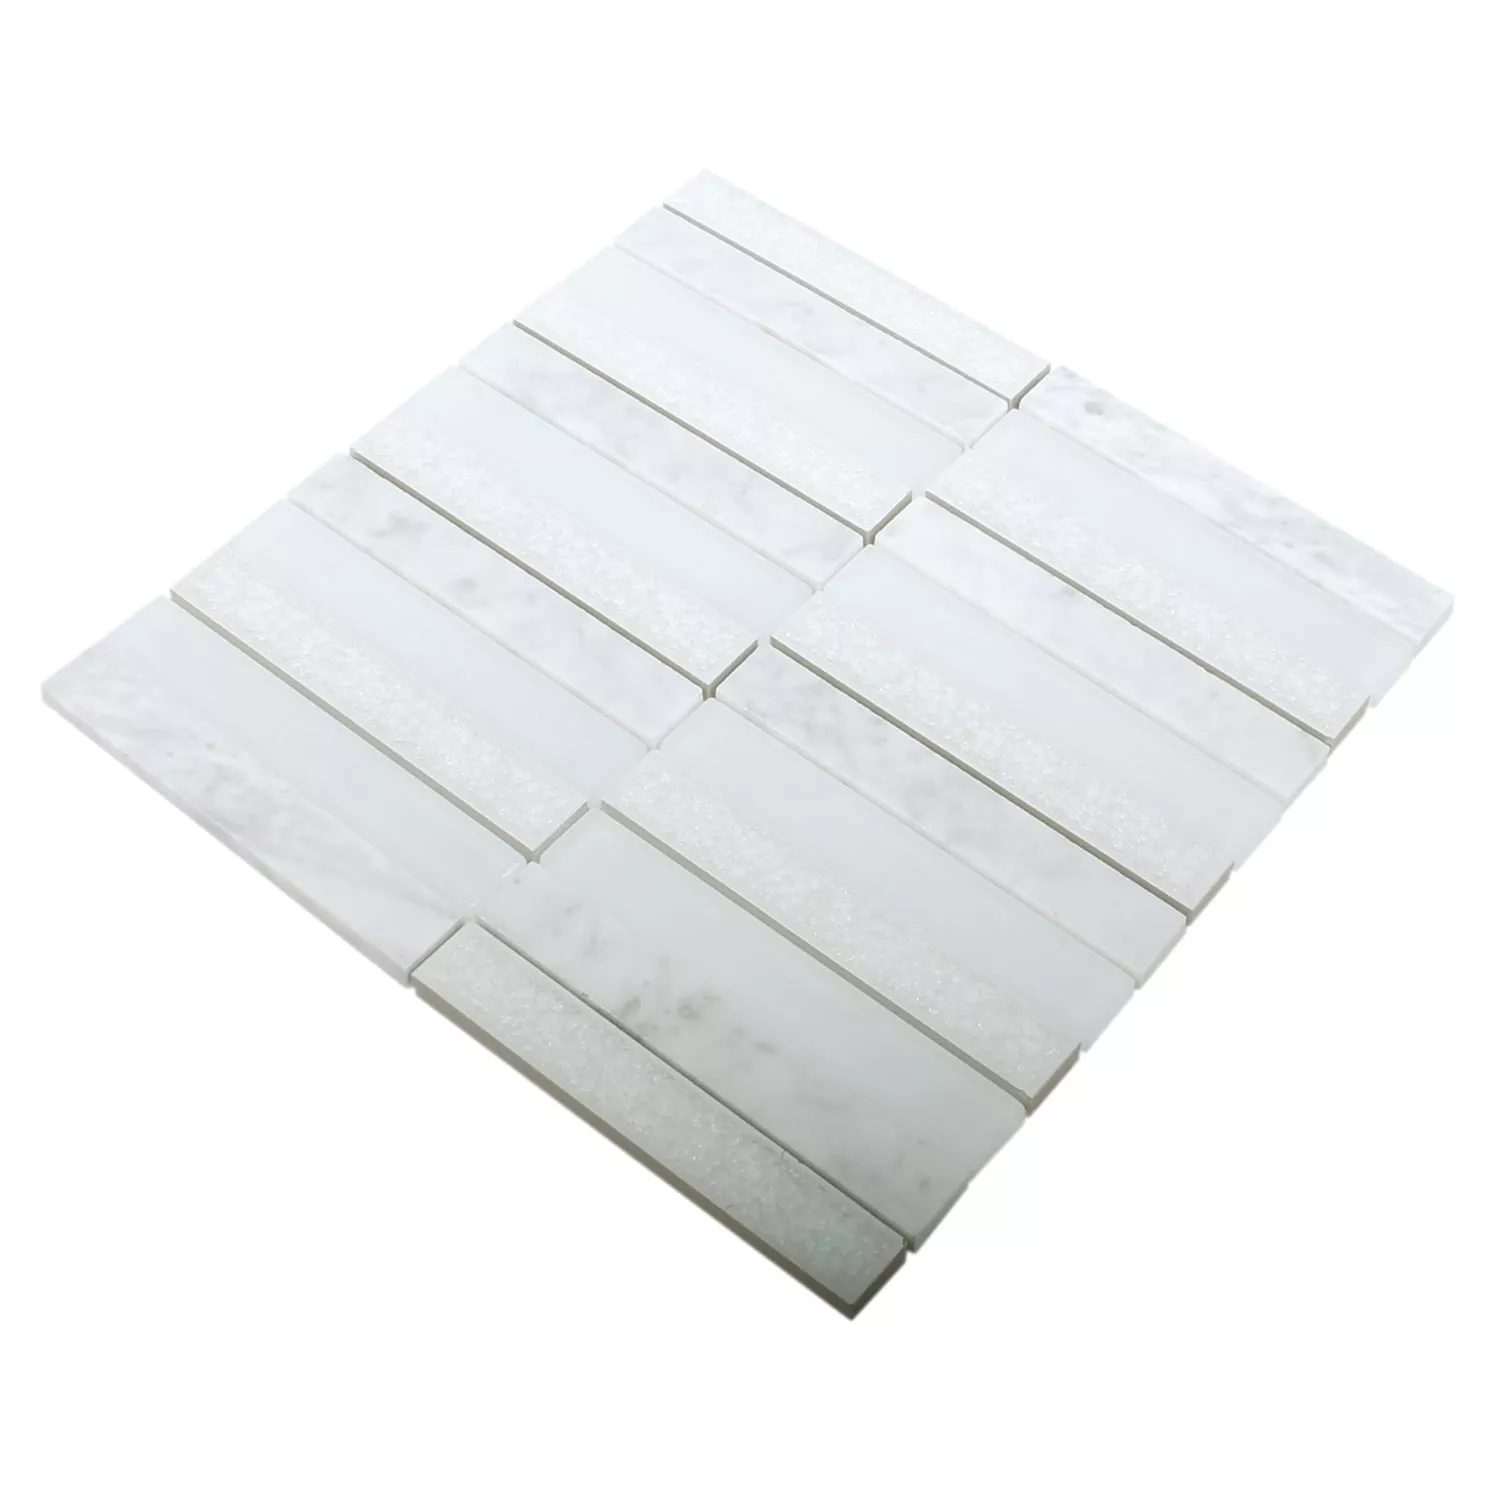 Sample Mosaic Tiles Glass Natural Stone Talinn Arktis White